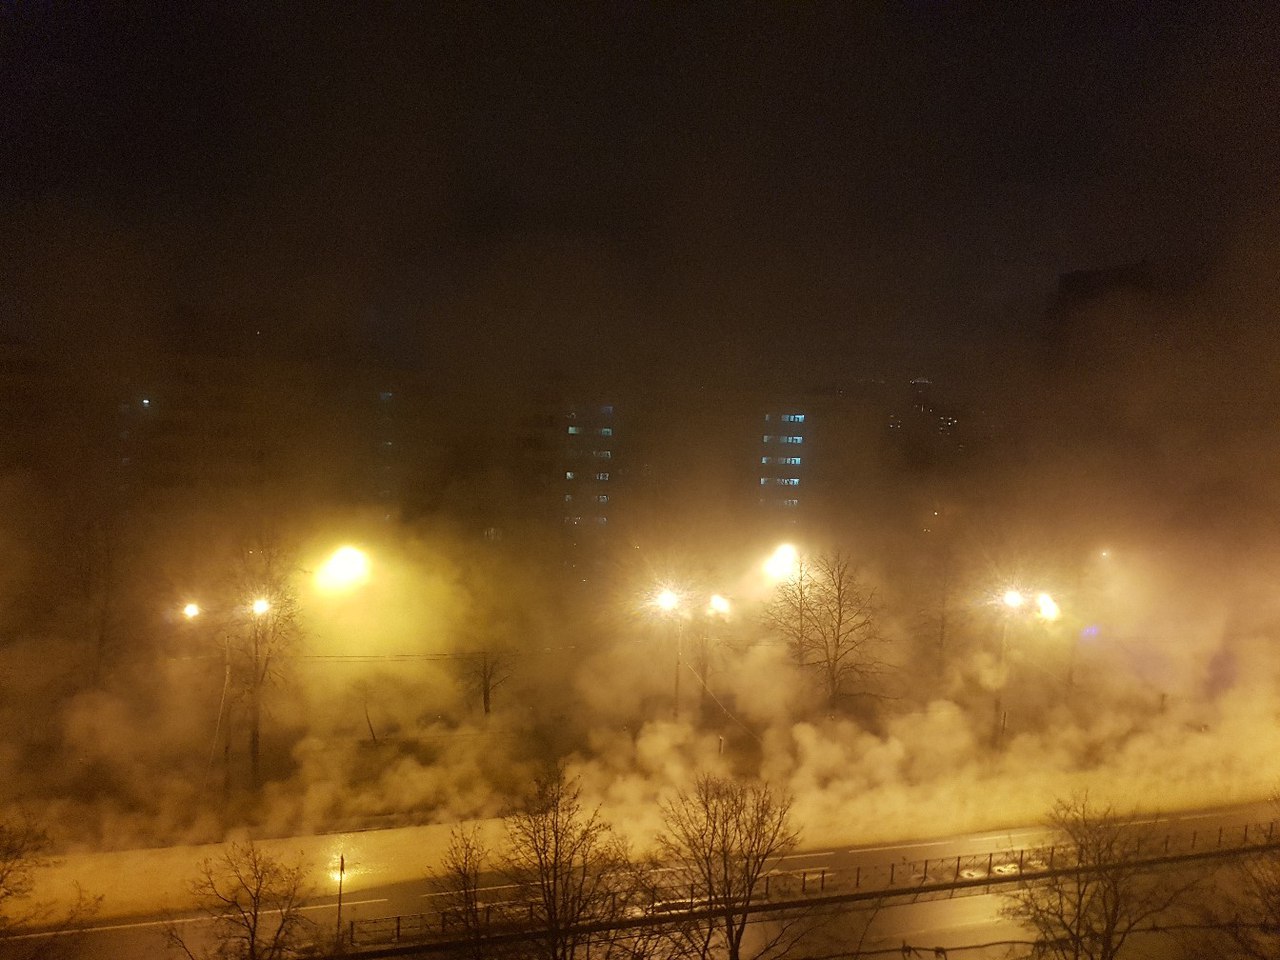 Жители домов на Софийской проснулись в неестественном тумане